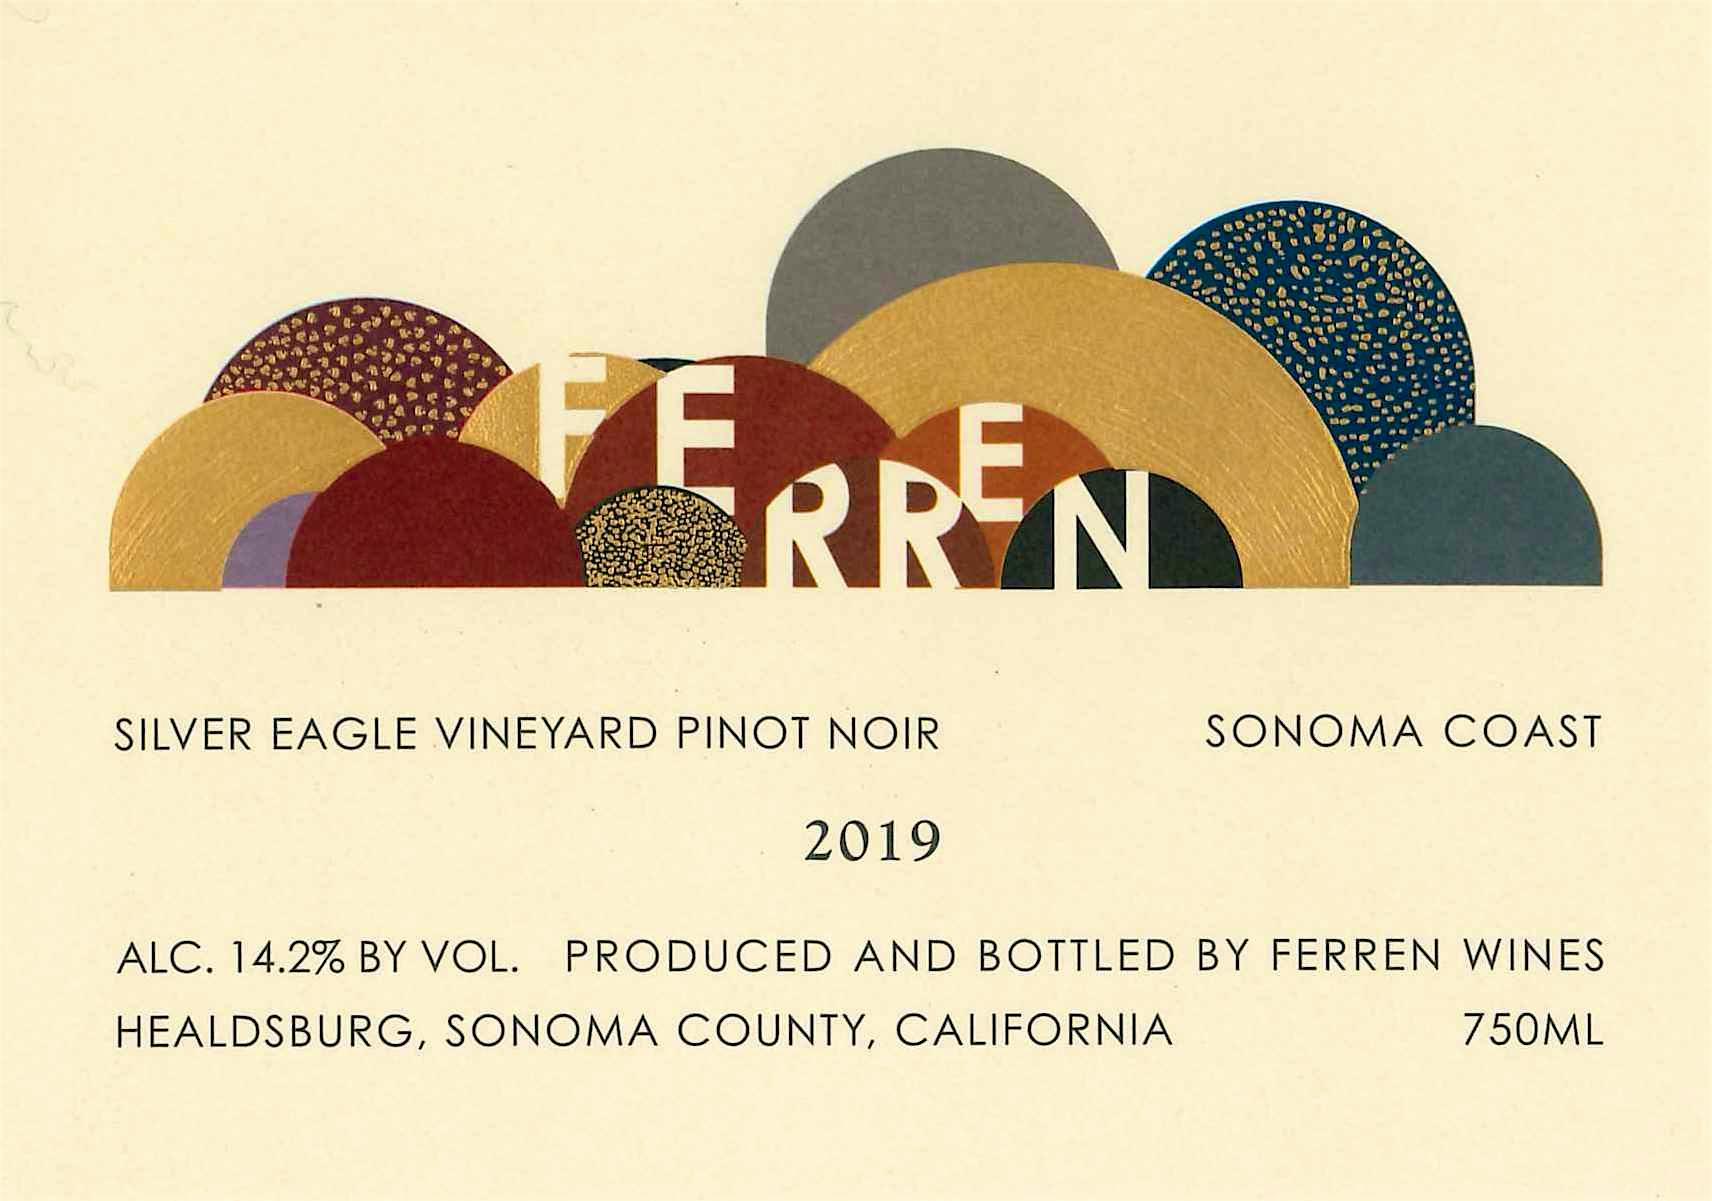 Label for Ferren